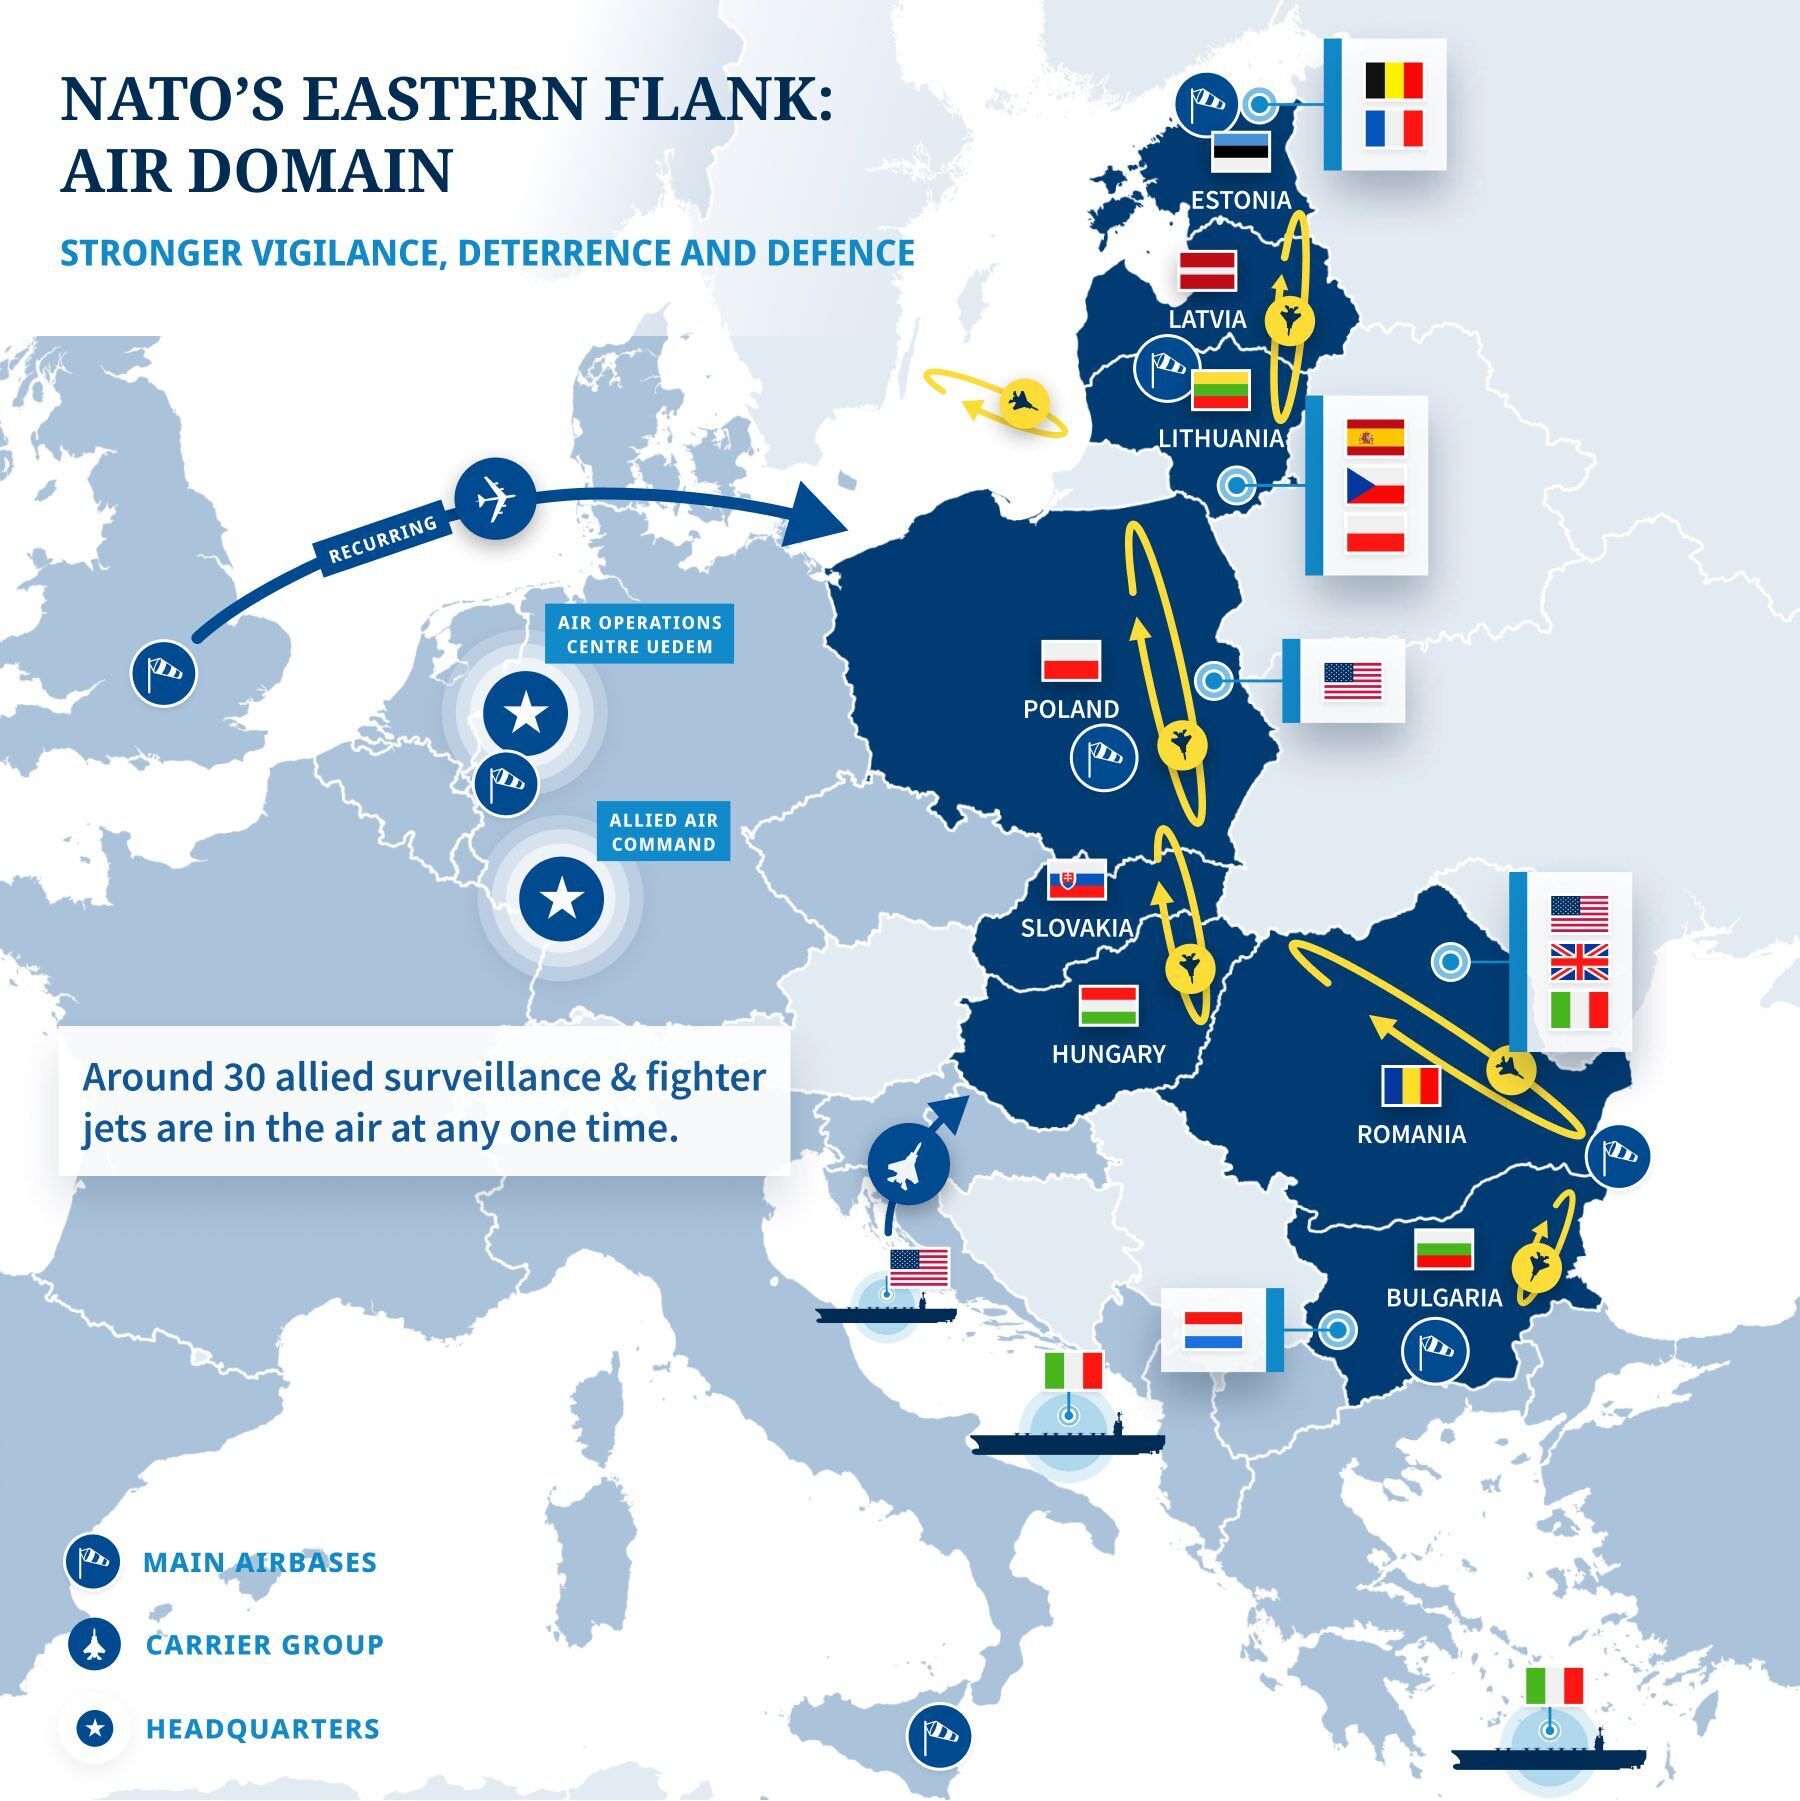 НАТО развертывает беспрецедентные силы в воздушном пространстве из-за агрессии РФ